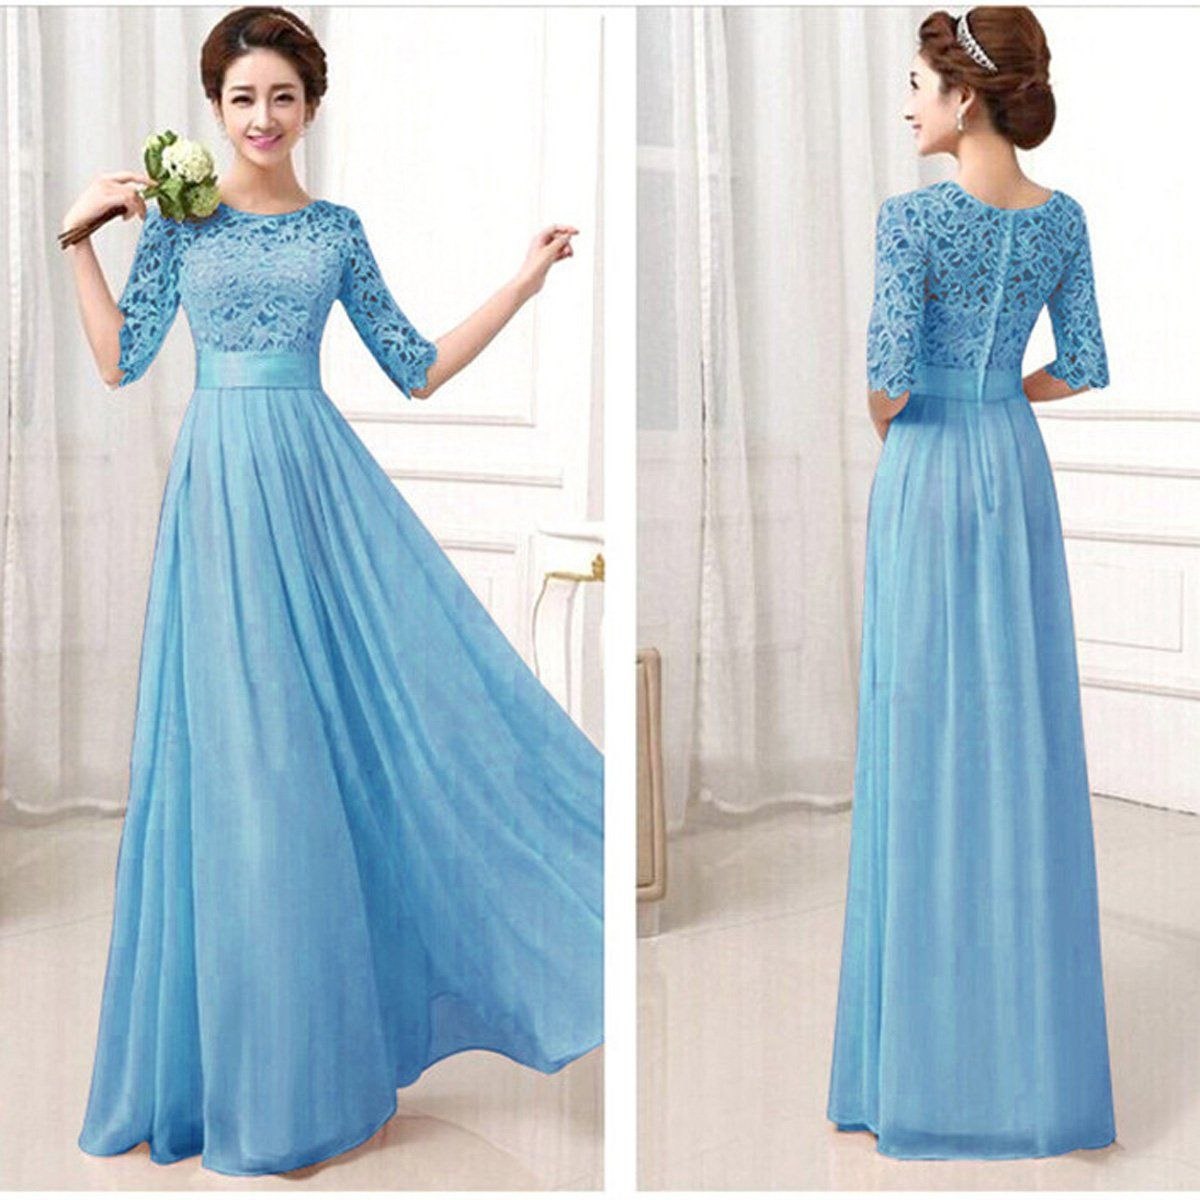 Голубое длинное платье